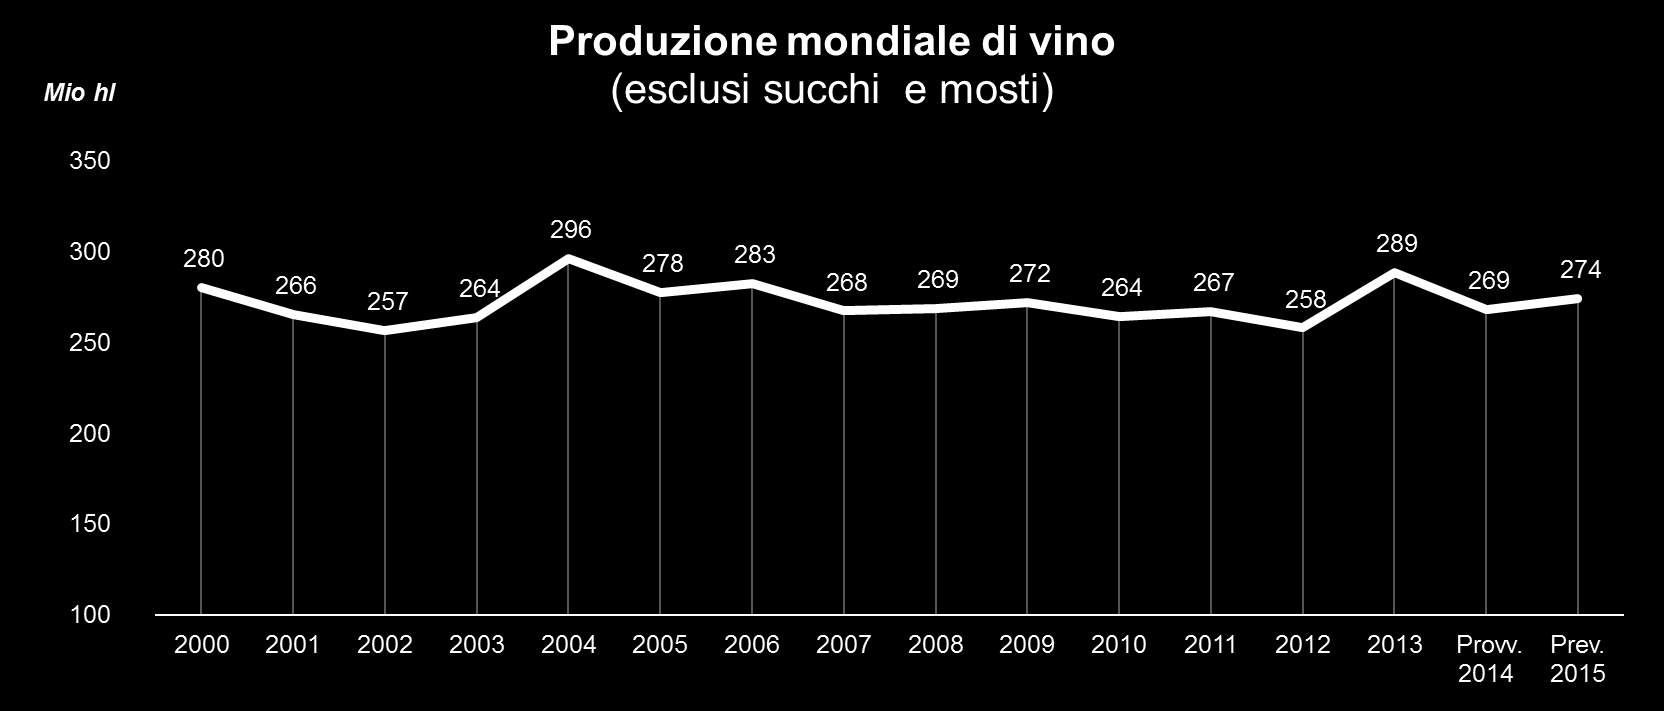 2. La produzione di vino 3 La produzione mondiale di vino 4 (esclusi succhi e mosti) del 2015 è stata relativamente alta.